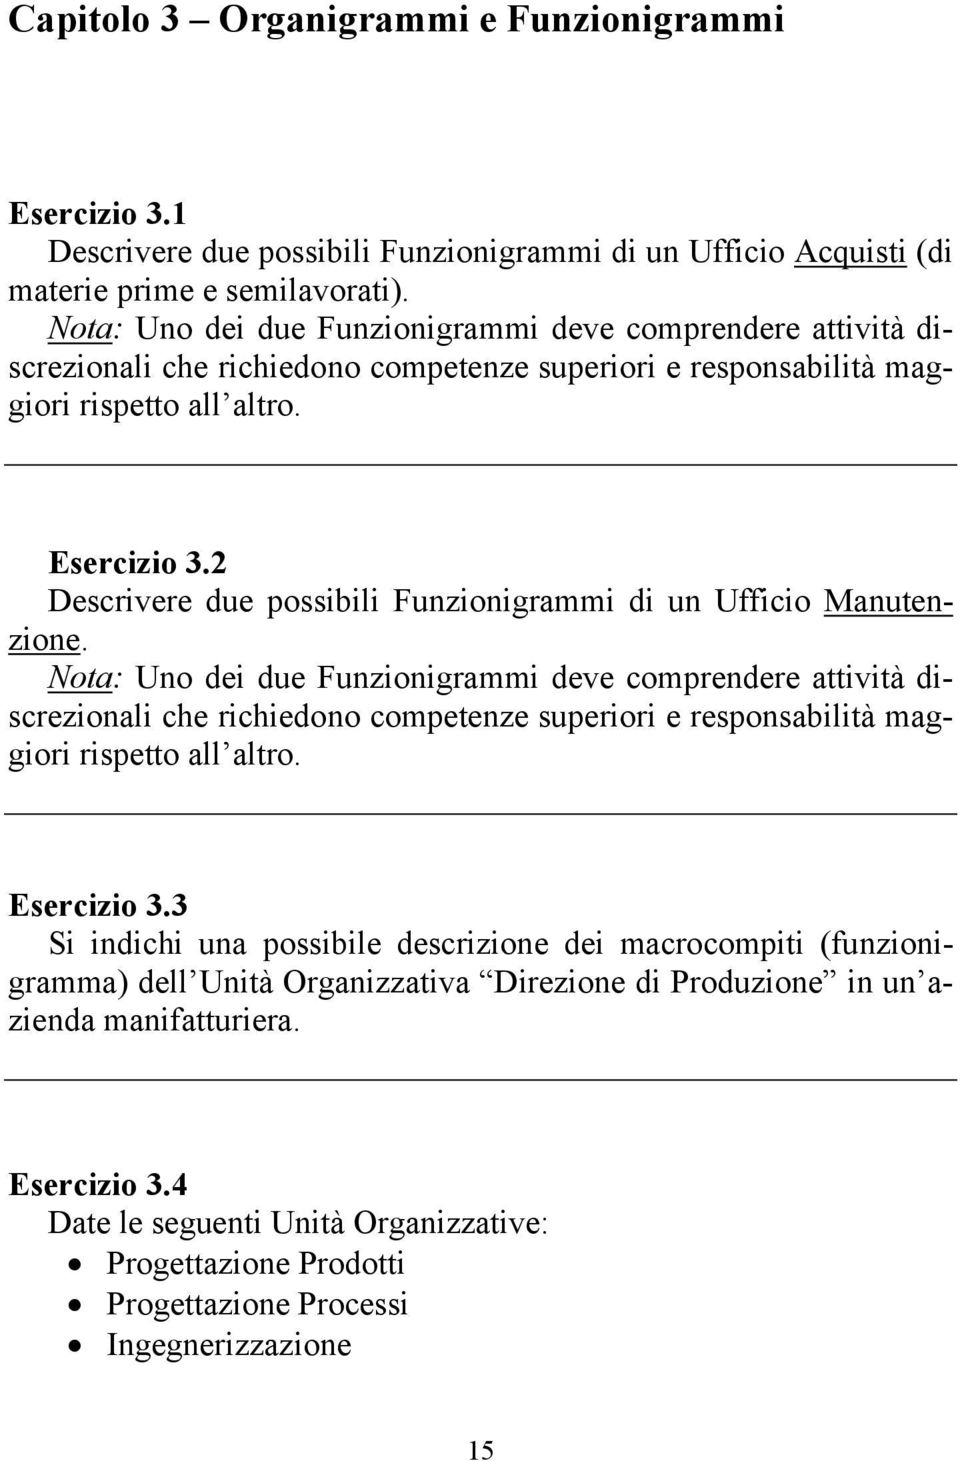 2 Descrivere due possibili Funzionigrammi di un Ufficio Manutenzione.